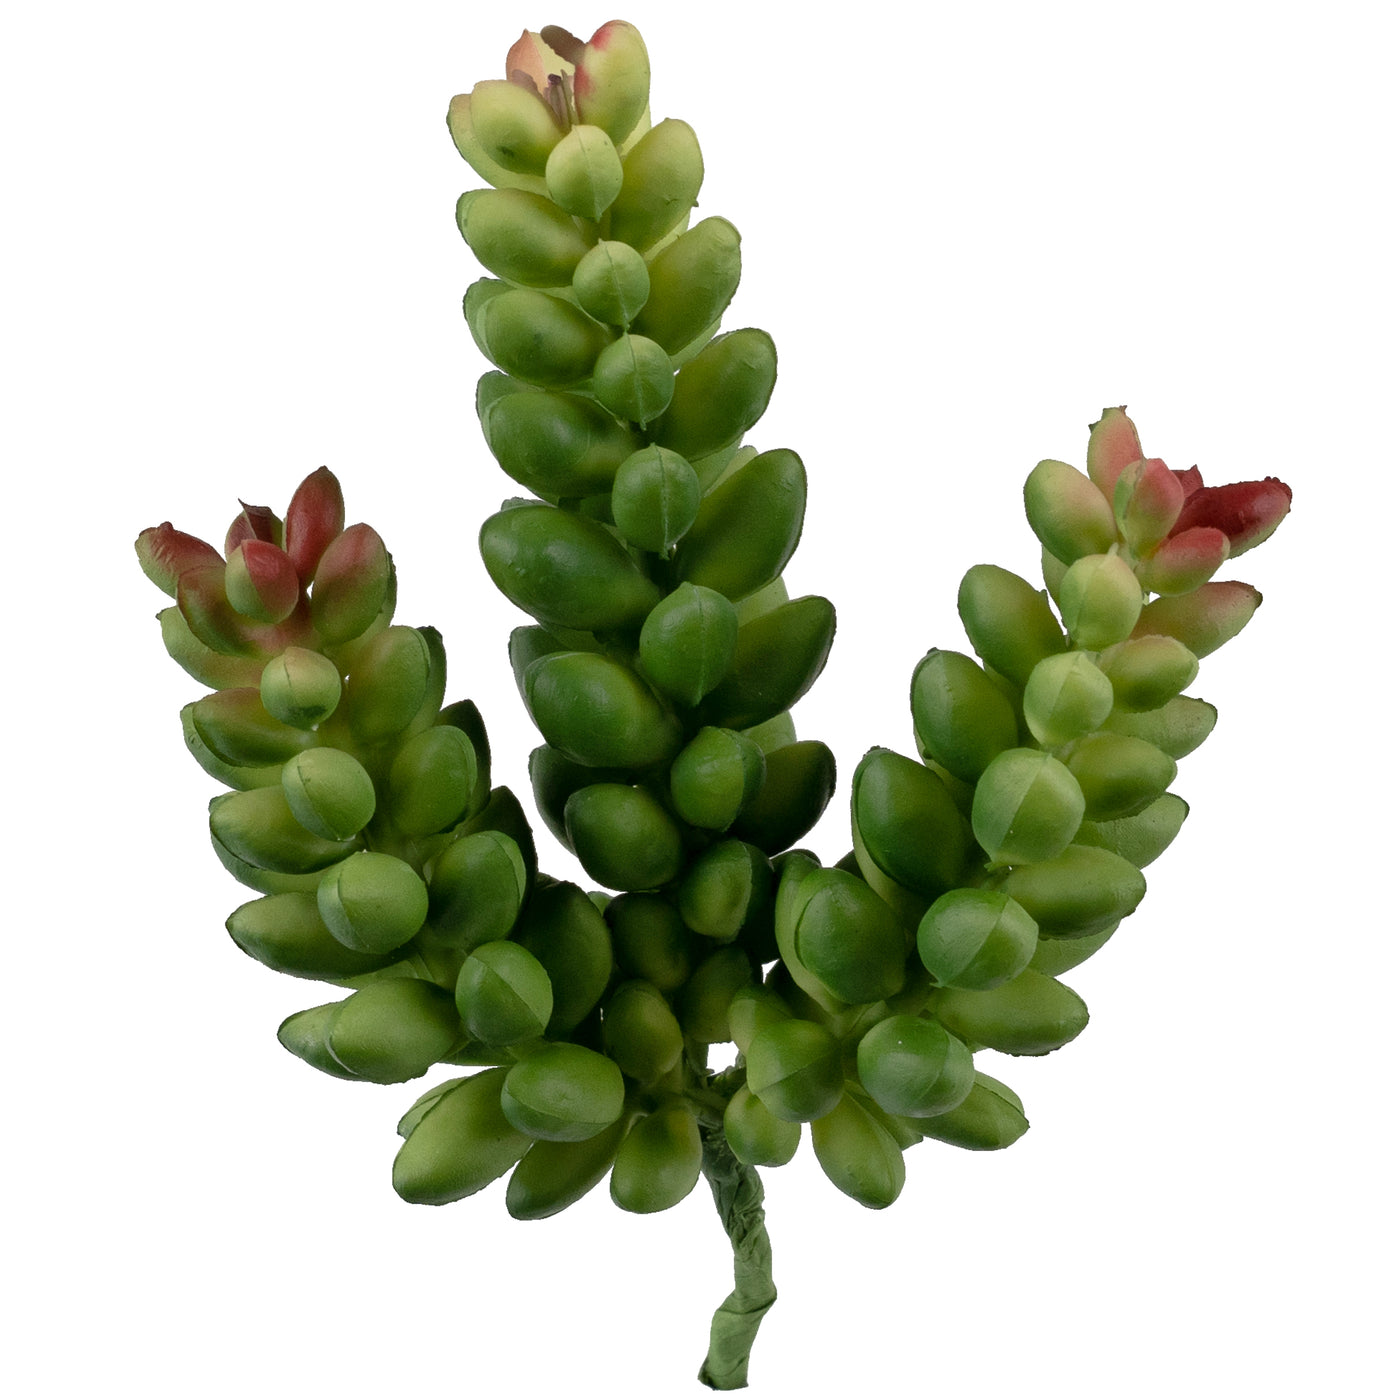 Planta artificiala suculenta model73